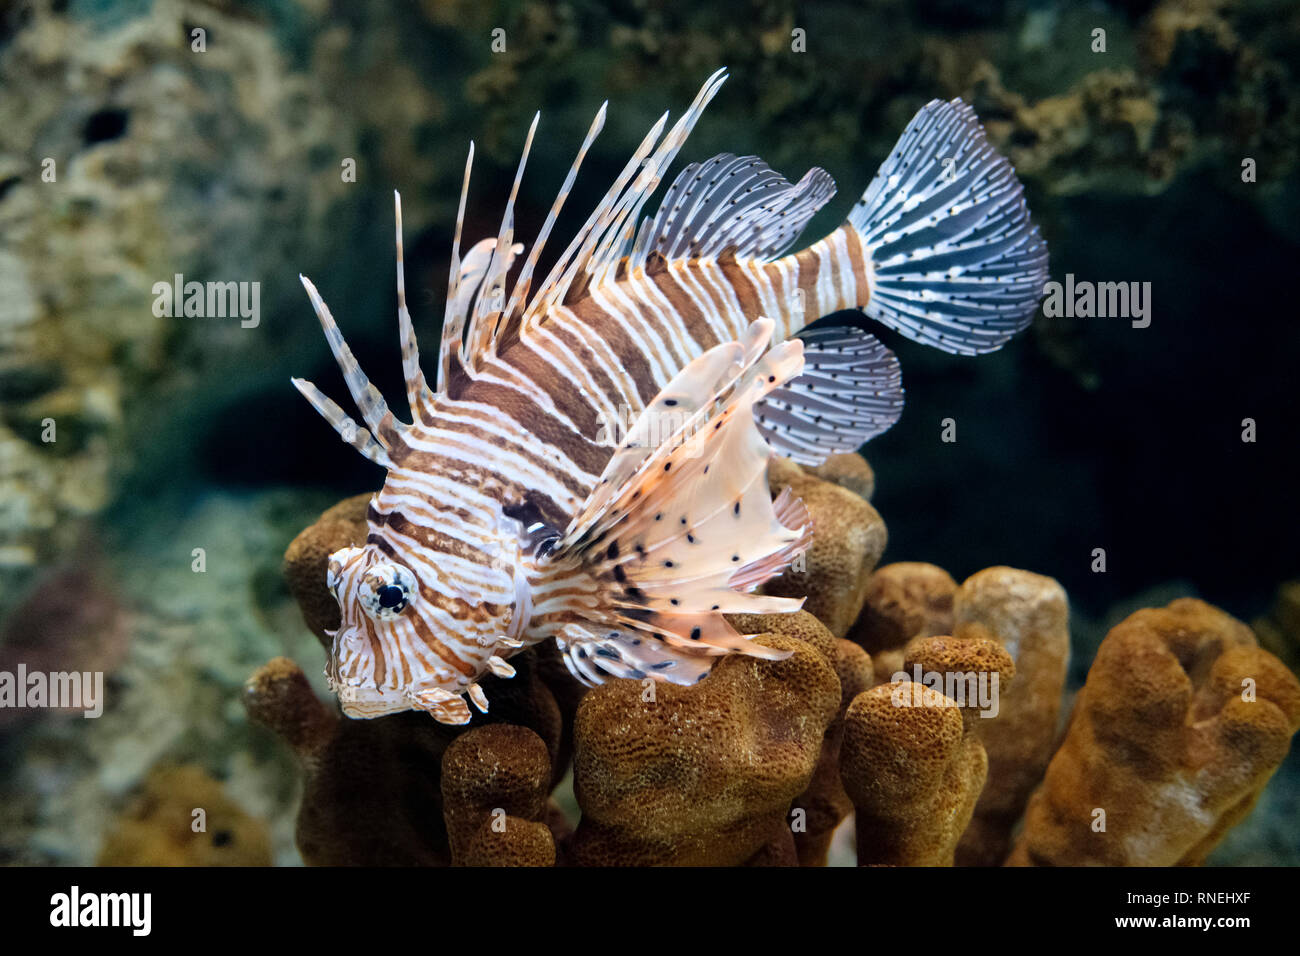 Lionfish (Pterois volitans), venomous coral reef fish, family Scorpaenidae. Aquarium Stock Photo